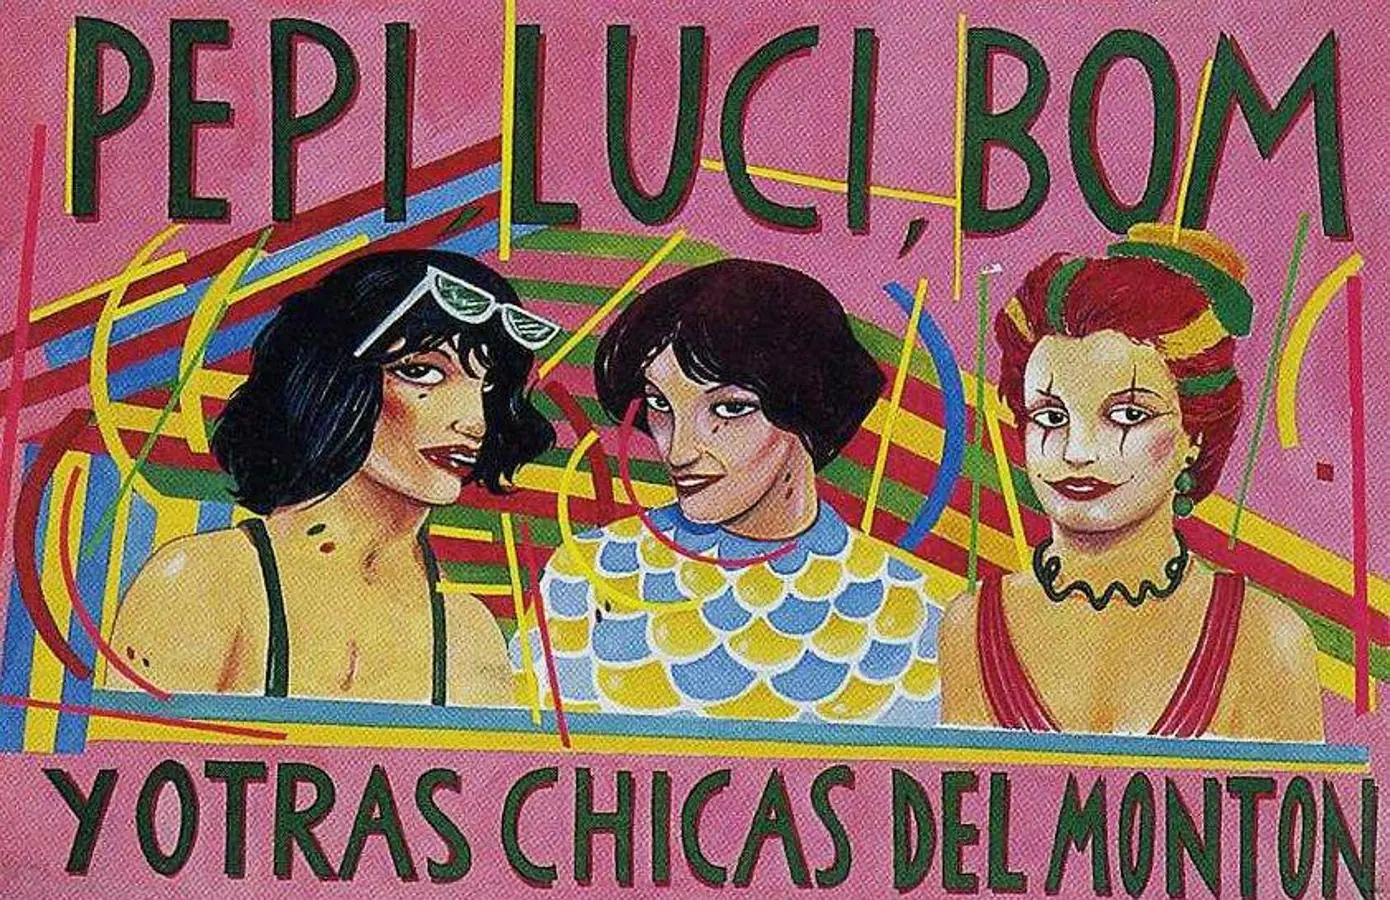 Los títulos de crédito de Pepi, Luci, Bom y otras chicas del montón (1980) fueron diseñados por Ceesepe, además del cartel de la película. 